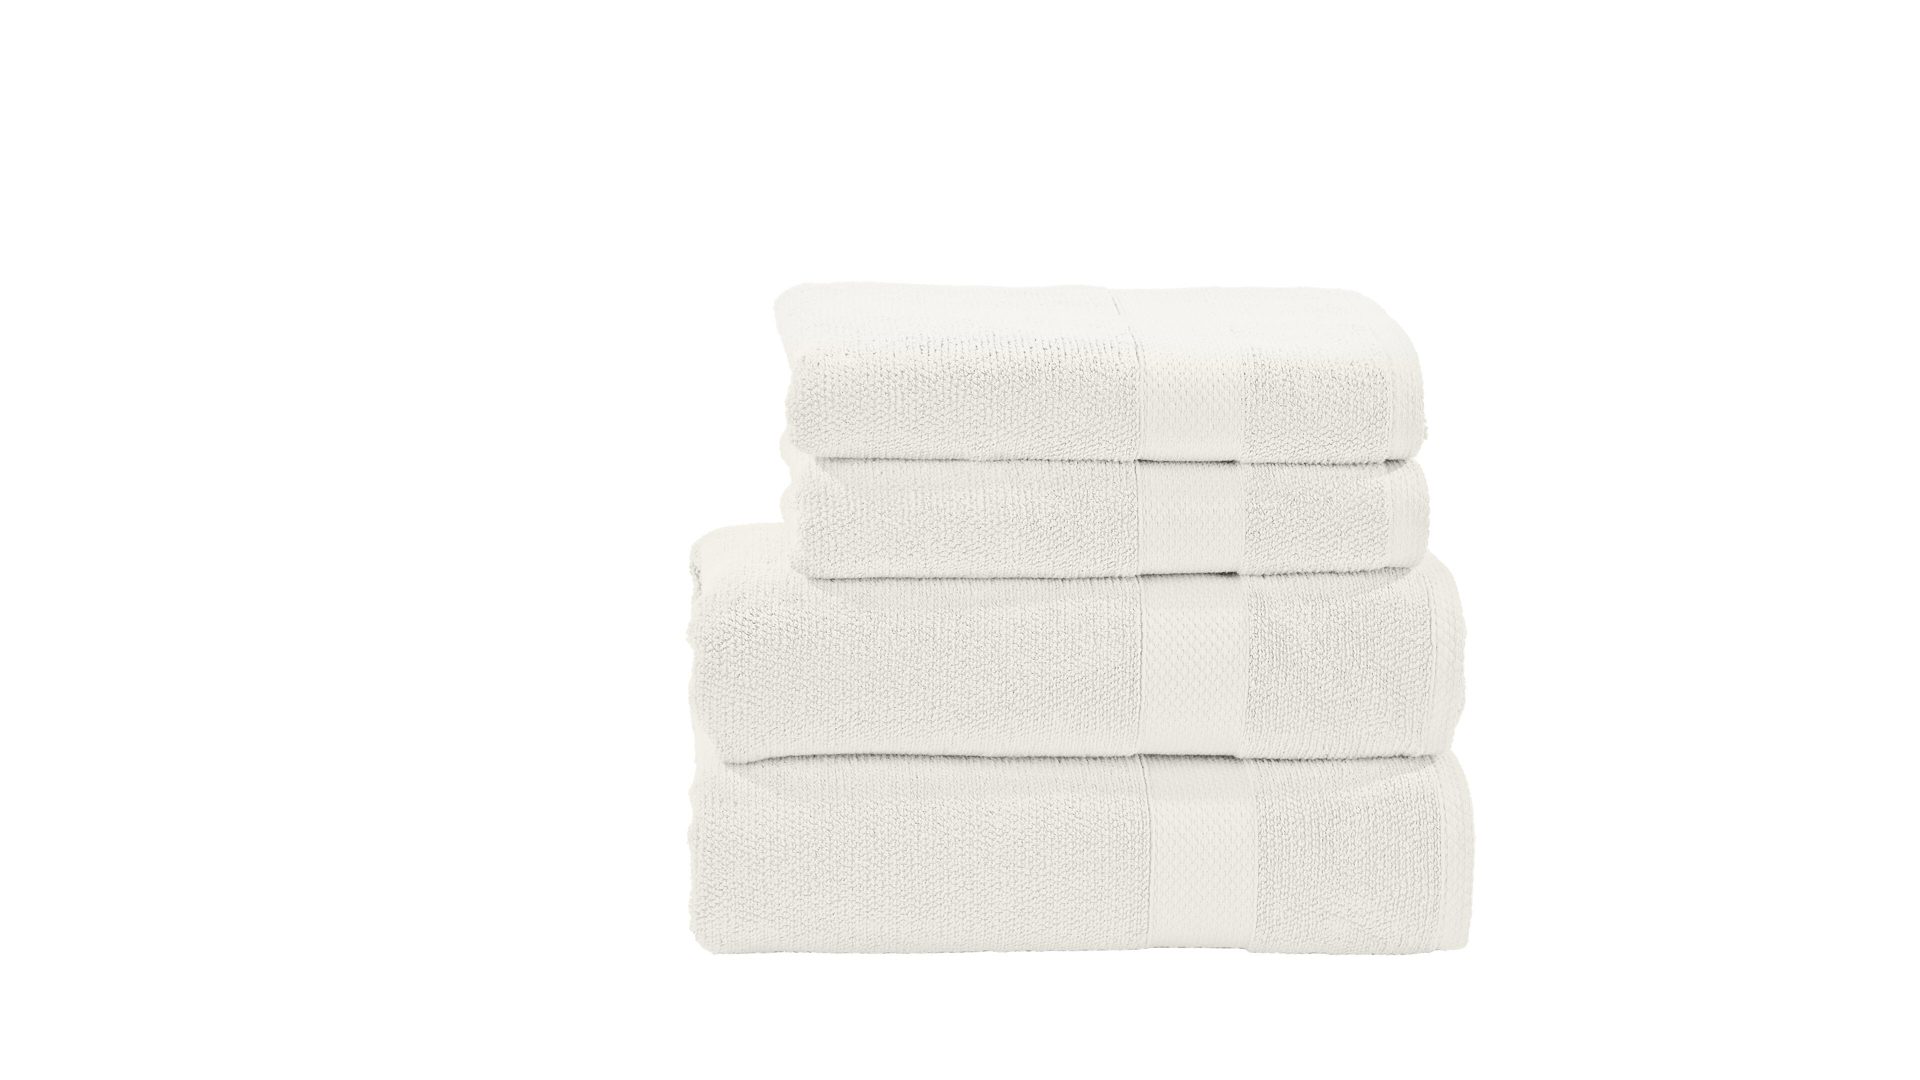 Handtuch-Set Done.® aus Stoff in Weiß done.®Handtuch-Set Deluxe weiße Baumwolle – vierteilig